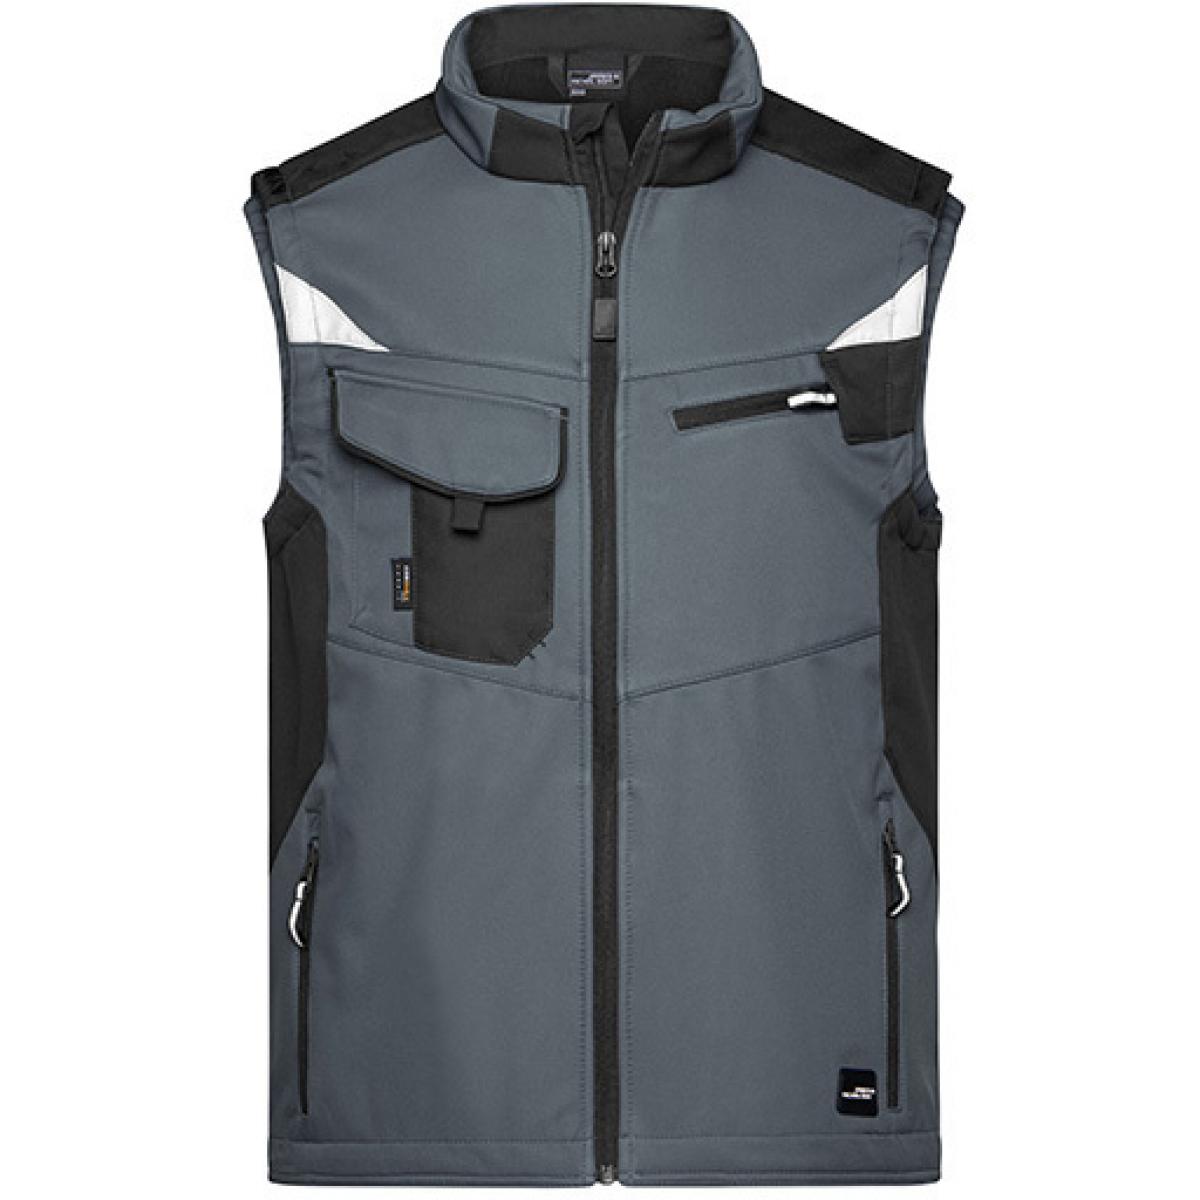 Hersteller: James+Nicholson Herstellernummer: JN845 Artikelbezeichnung: Herren Jacke, Workwear Softshell Vest -STRONG- Farbe: Carbon/Black